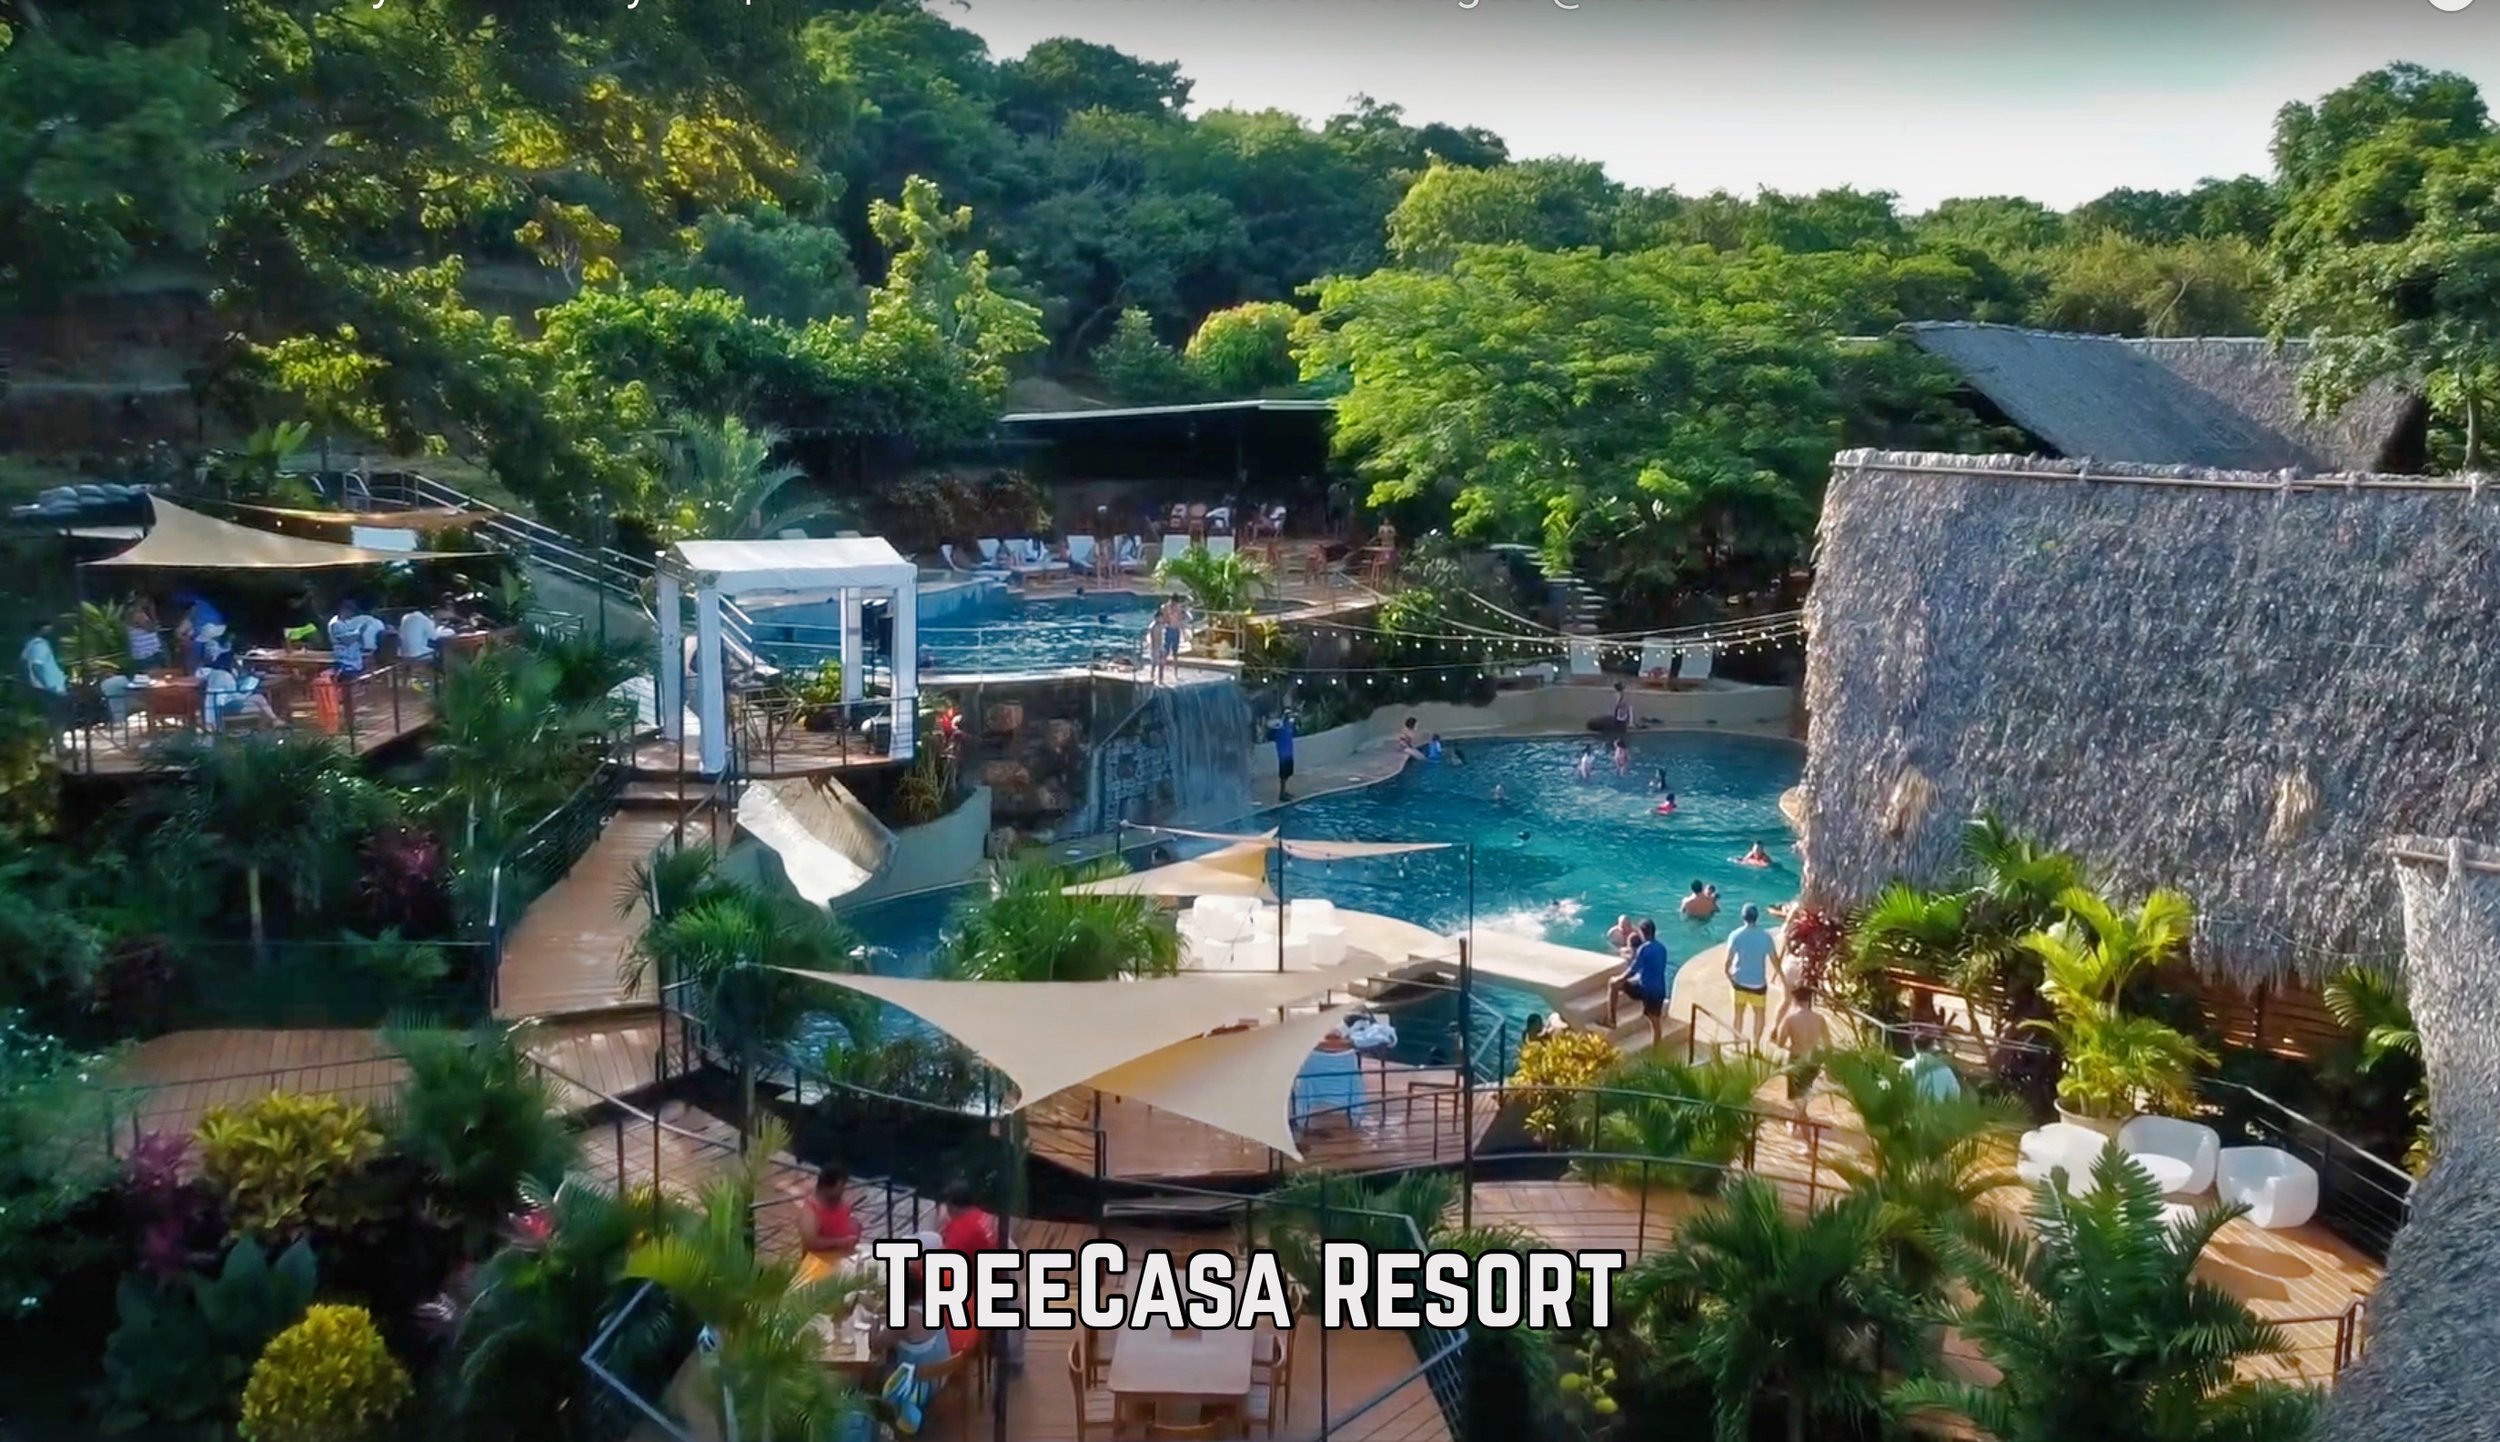 TreeCasa Resort San Juan Del Sur Nicaragua Property Real Estate.jpg